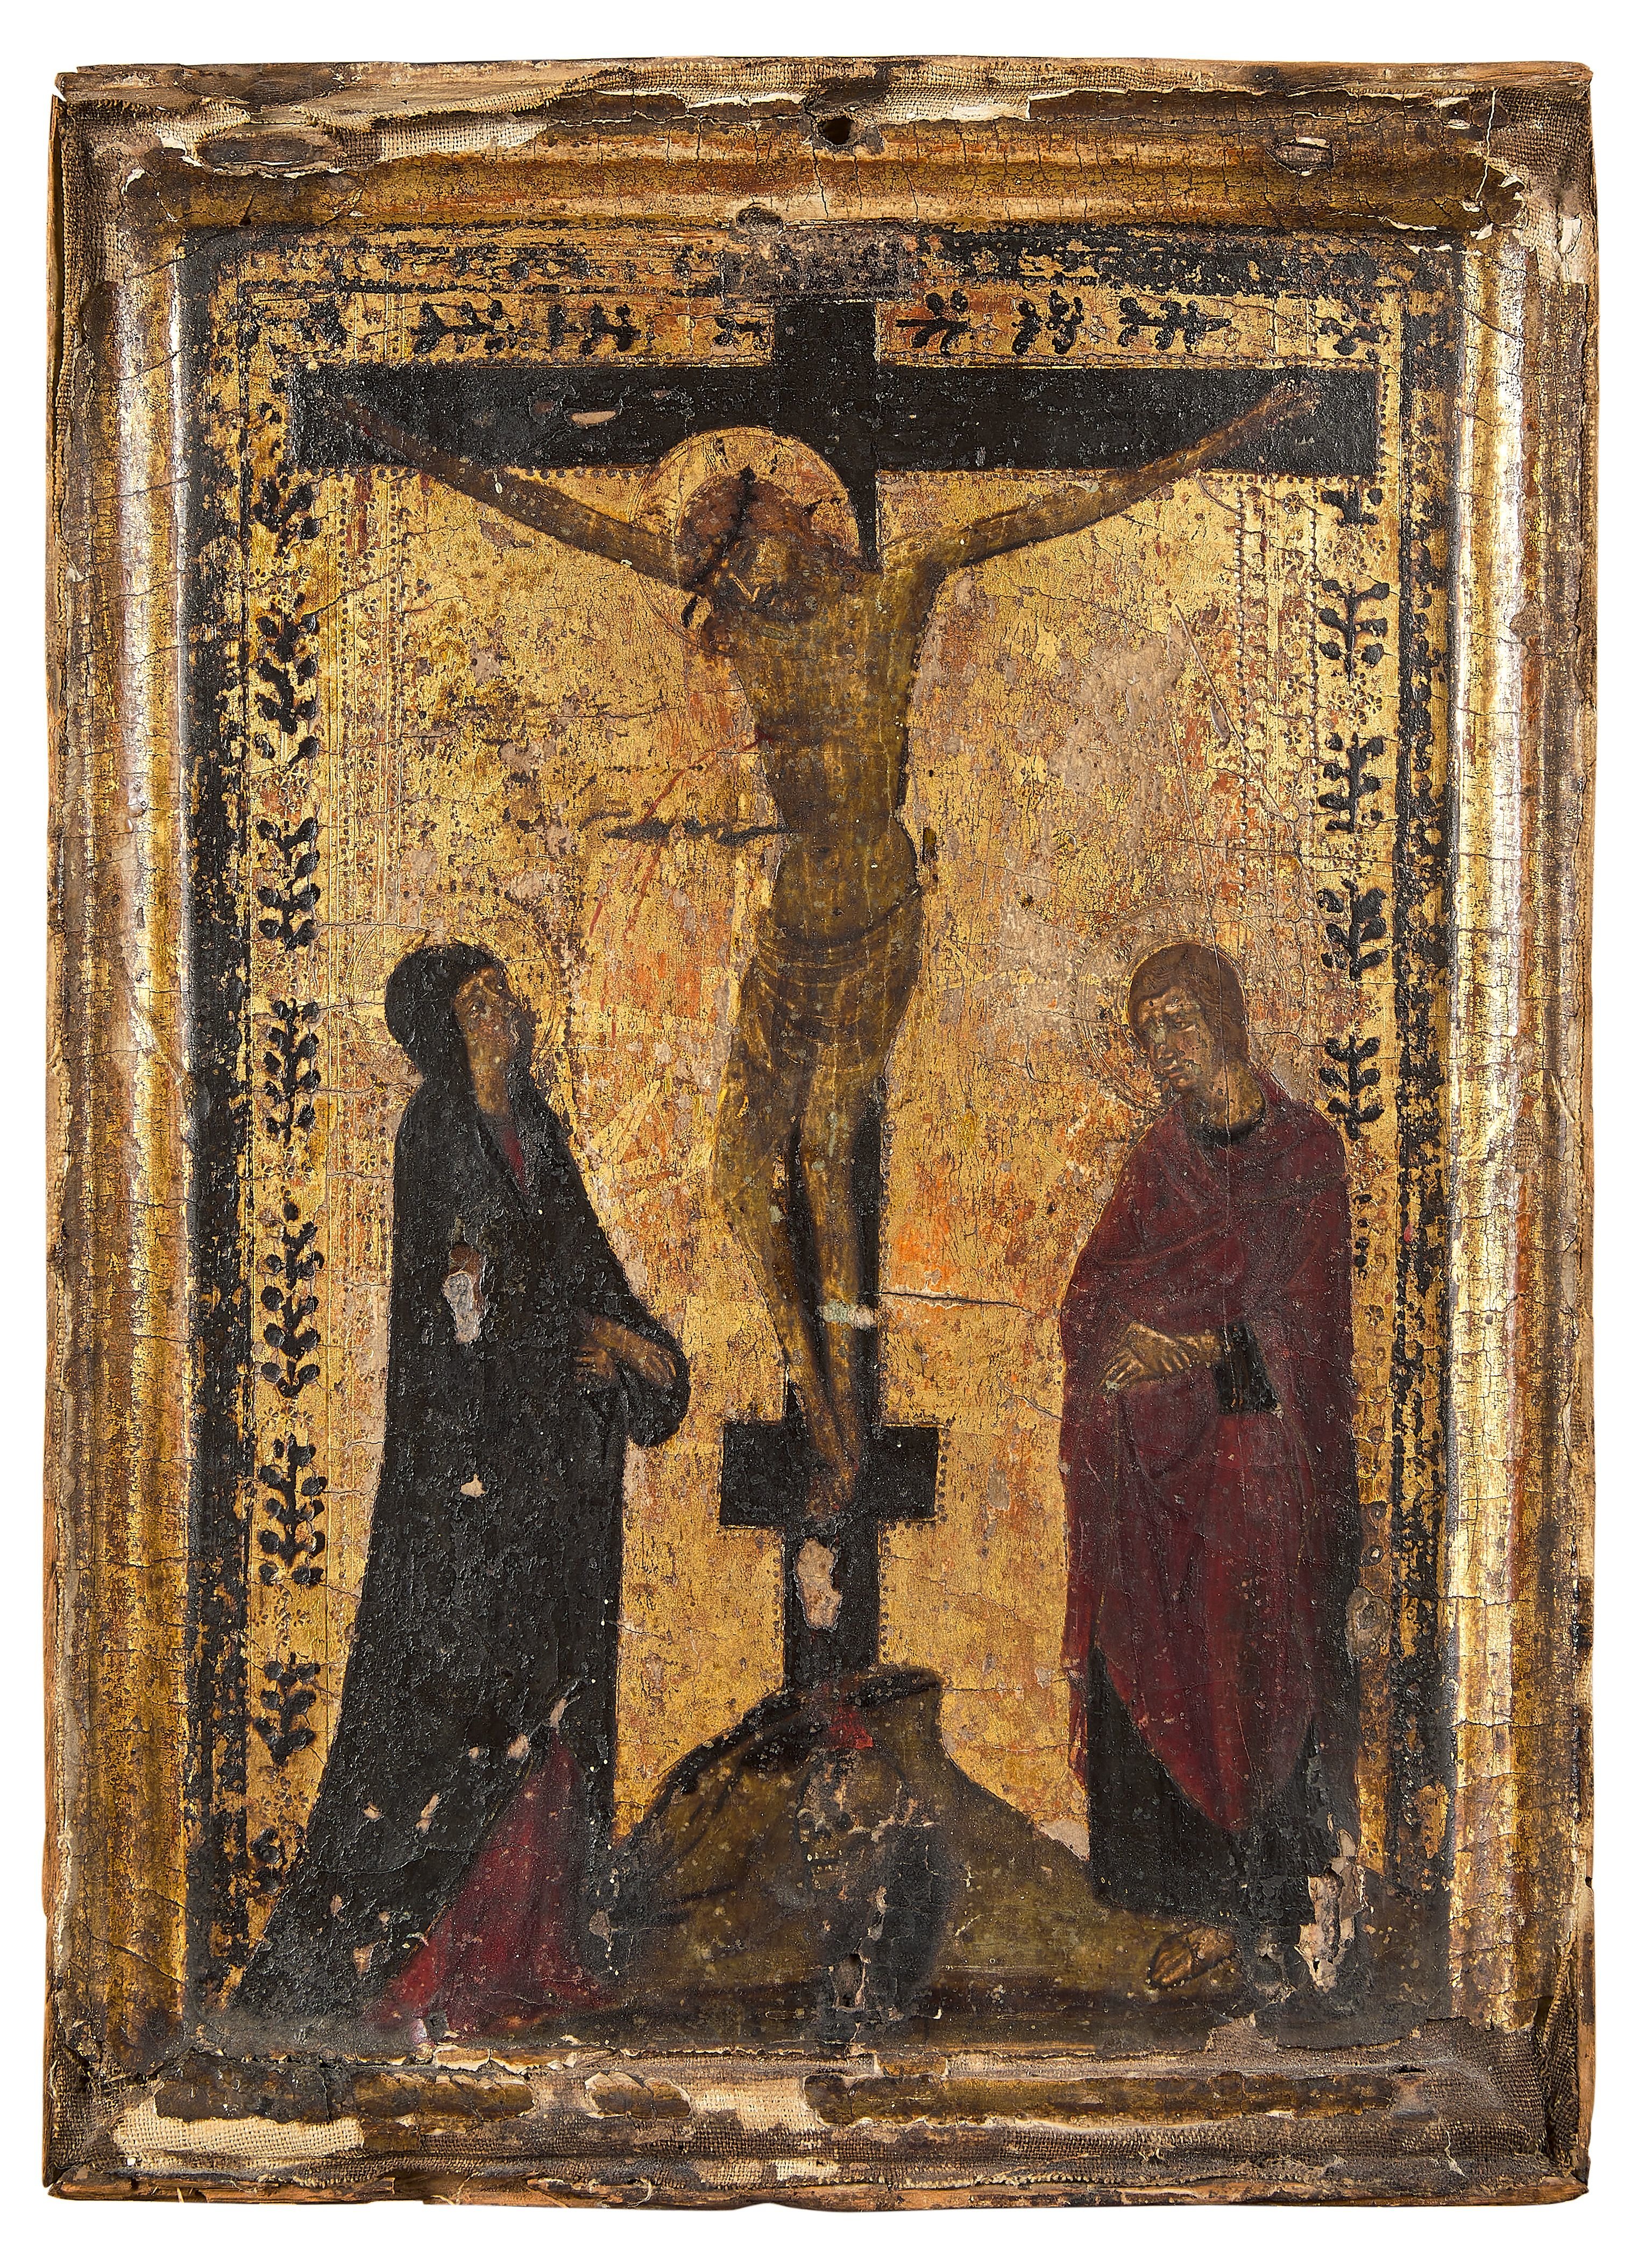 Ce tableau du XIVème siècle est attribué à un artiste anonyme siennois du début du XIVe siècle désigné sous le surnom de Maître de Monte Oliveto Maggiore, un artiste anonyme siennois. Studio SEBERT